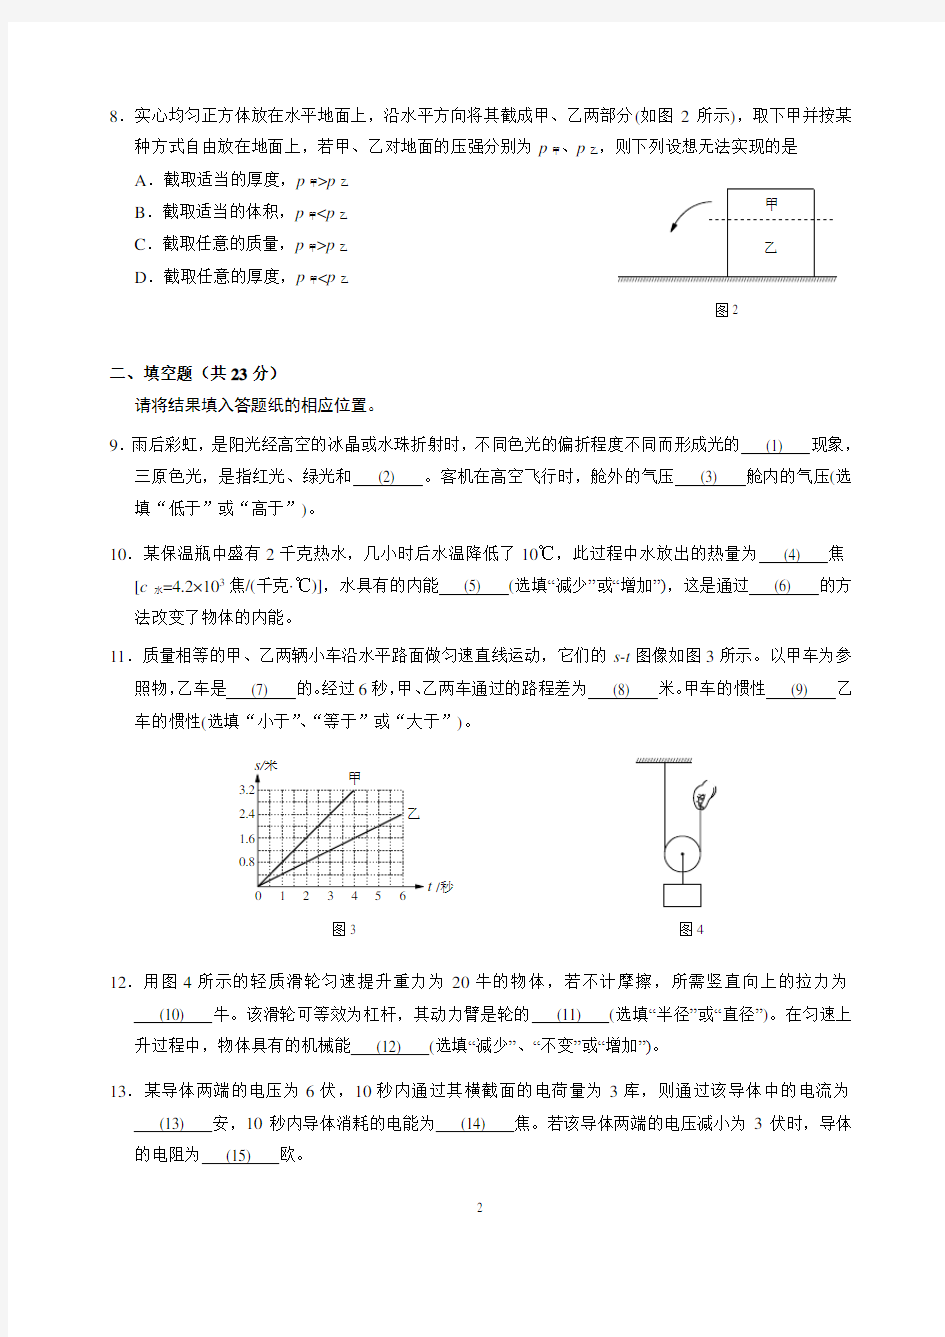 2019-2020学年上海市长宁区九年级第二学期(二模)考试物理试卷(官方版含评分细则)